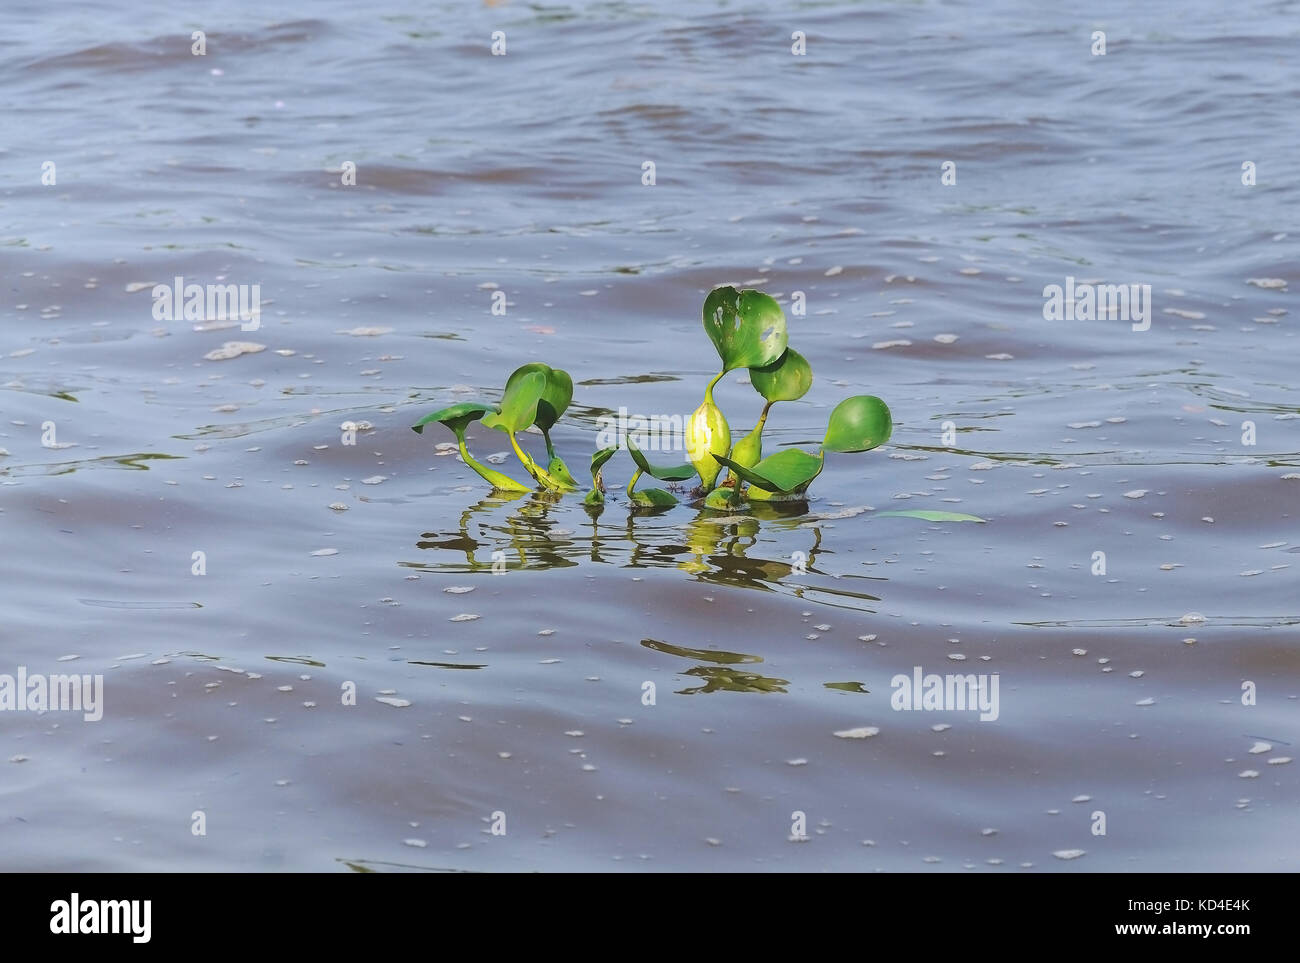 Verde pianta acquatica galleggiante sopra acqua di fiume. Pianta conosciuta come Aguape. Foto scattata nel Pantanal, Brasile. Foto Stock